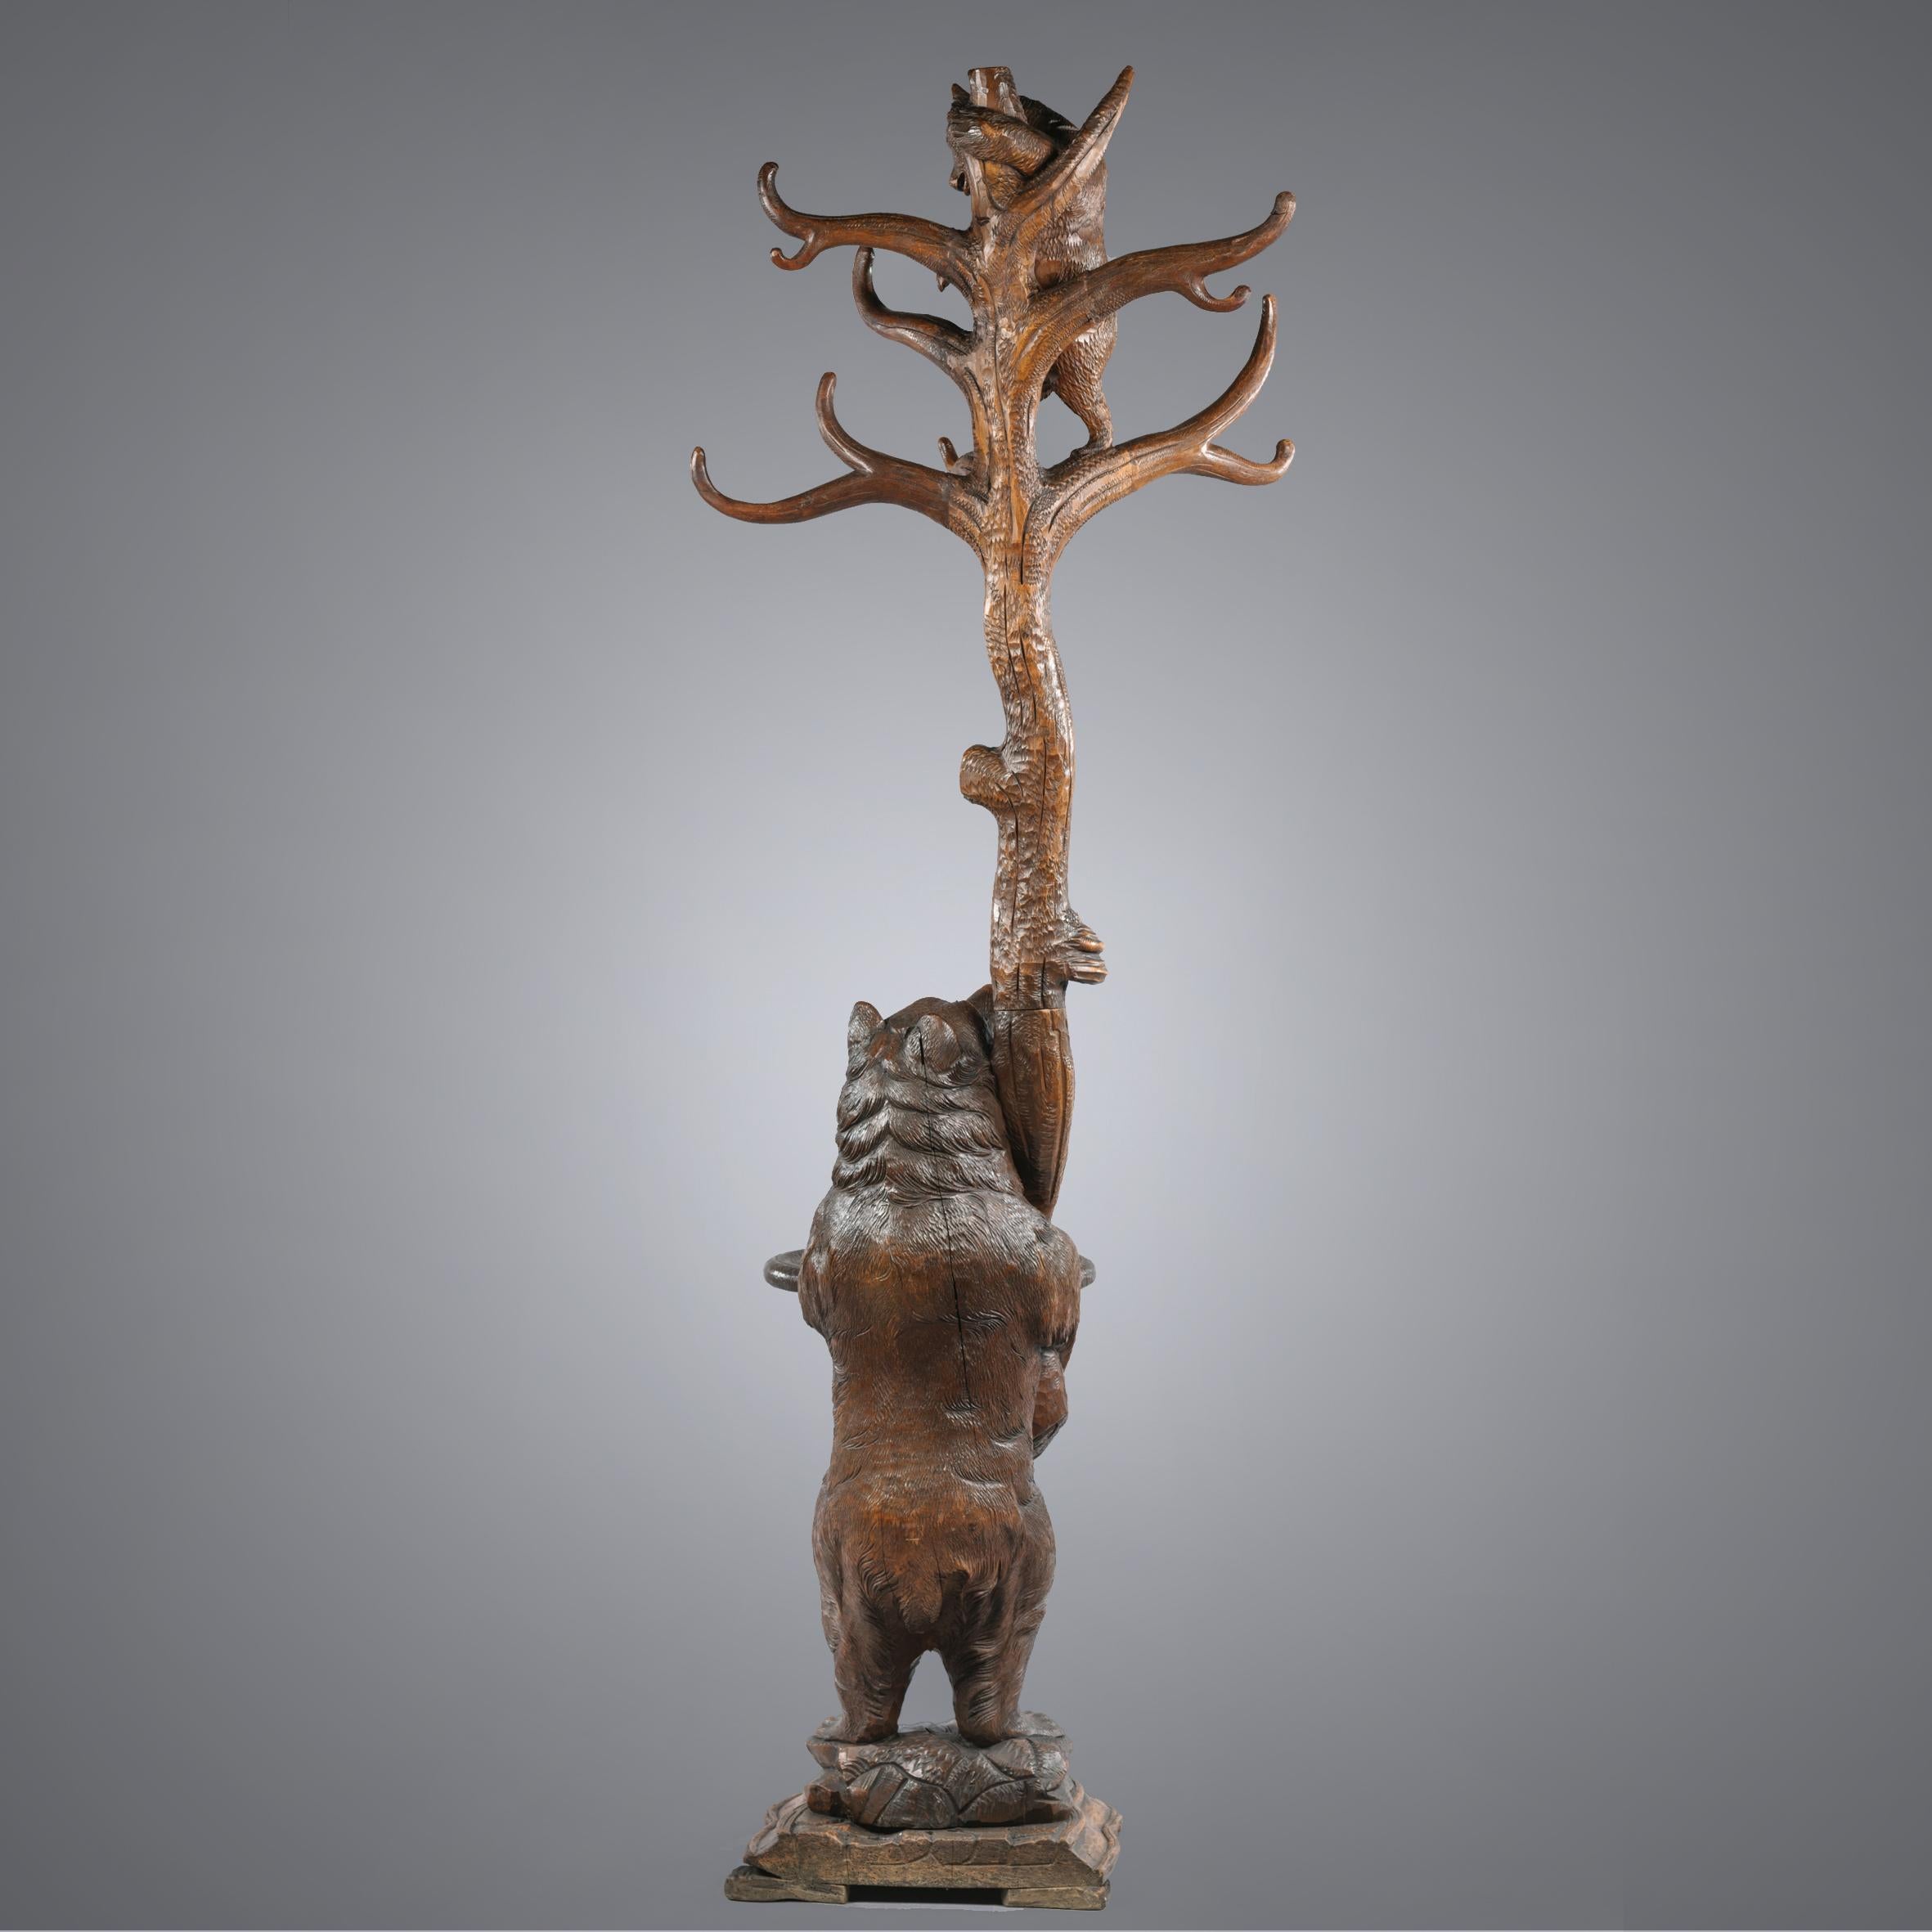 Très bel ours sculpté à la main de la Forêt Noire de Brienz au 19e siècle.

Ce charmant porte-manteau est sculpté de façon naturelle dans du bois de tilleul et représente un ours de la Forêt-Noire debout près d'un arbre, la bouche et les yeux